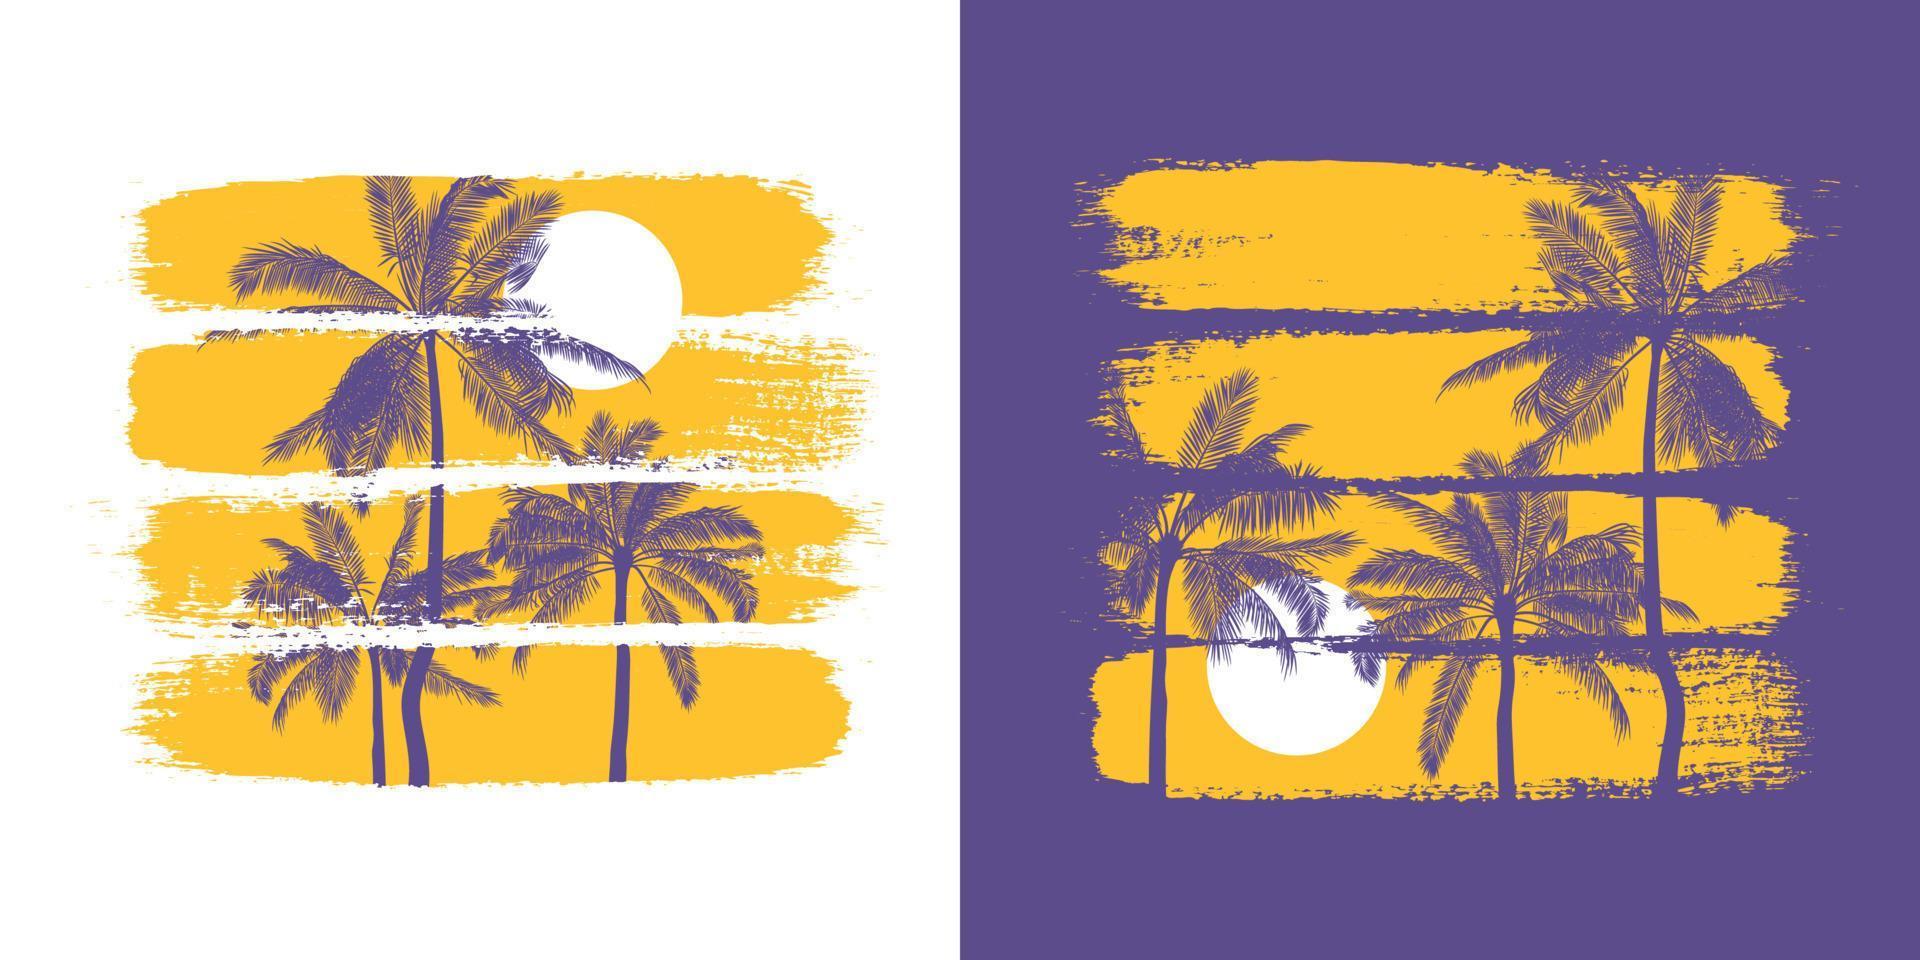 illustrazione botanica di sagome di palme e sole con pennellate colorate. modello vettoriale per la stampa e il design in stile tropicale. poster estivo nei colori giallo e viola